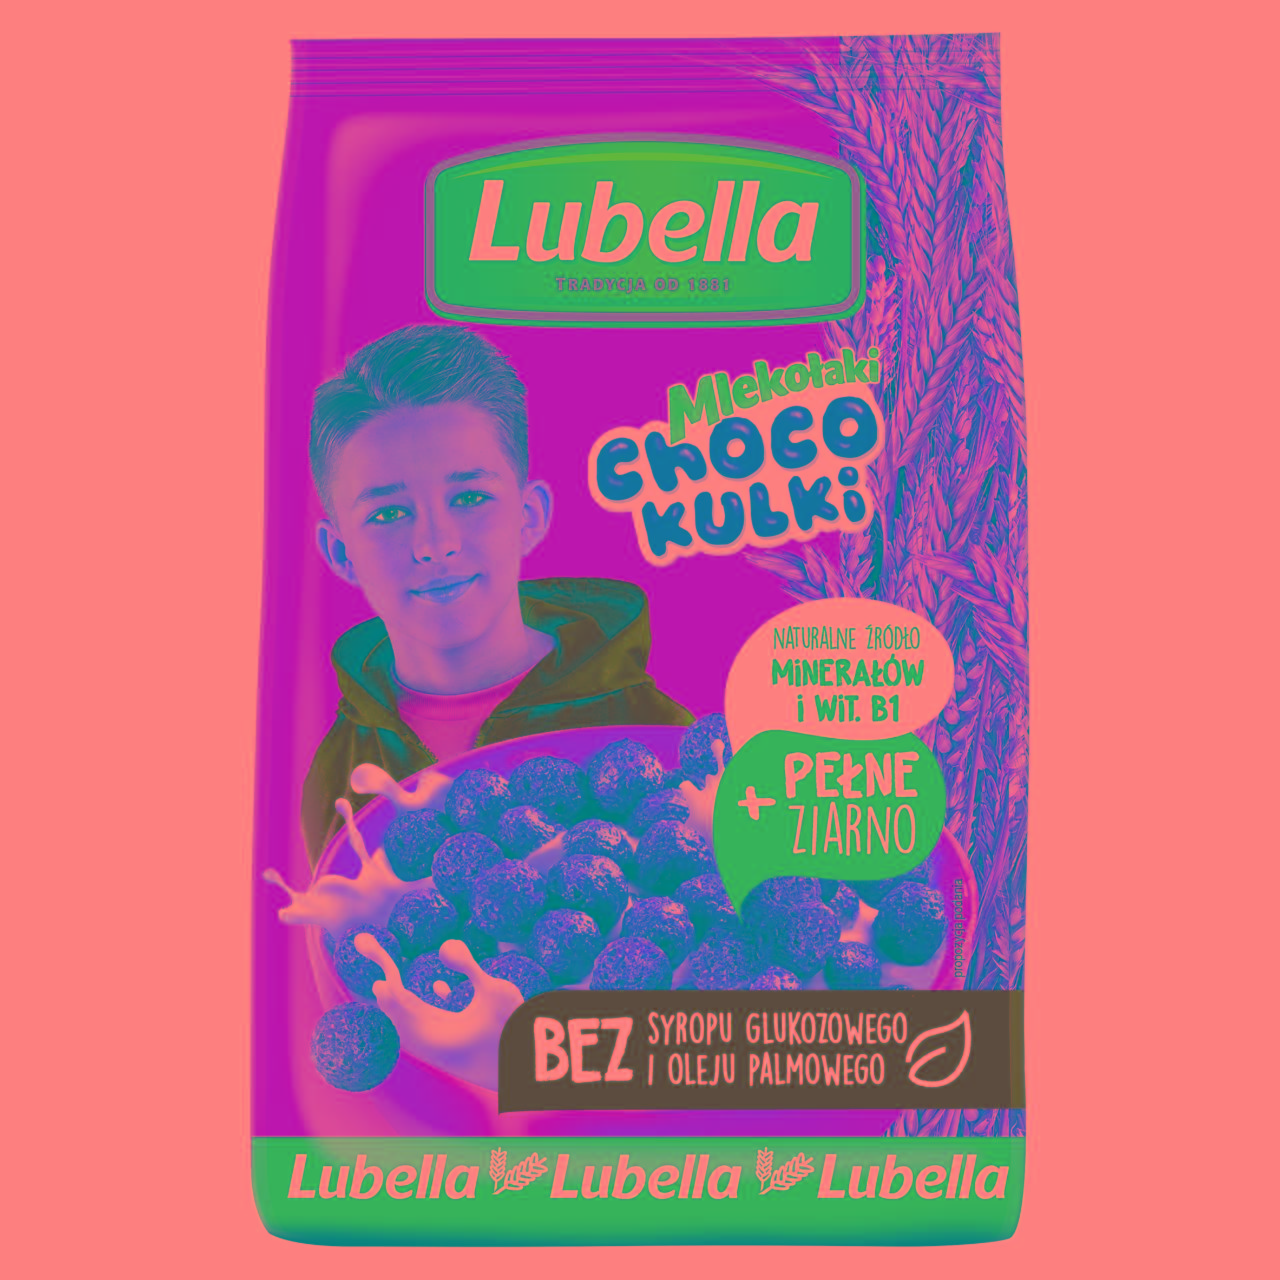 Zdjęcia - Lubella Choco kulki Zbożowe kulki o smaku czekoladowym 250 g